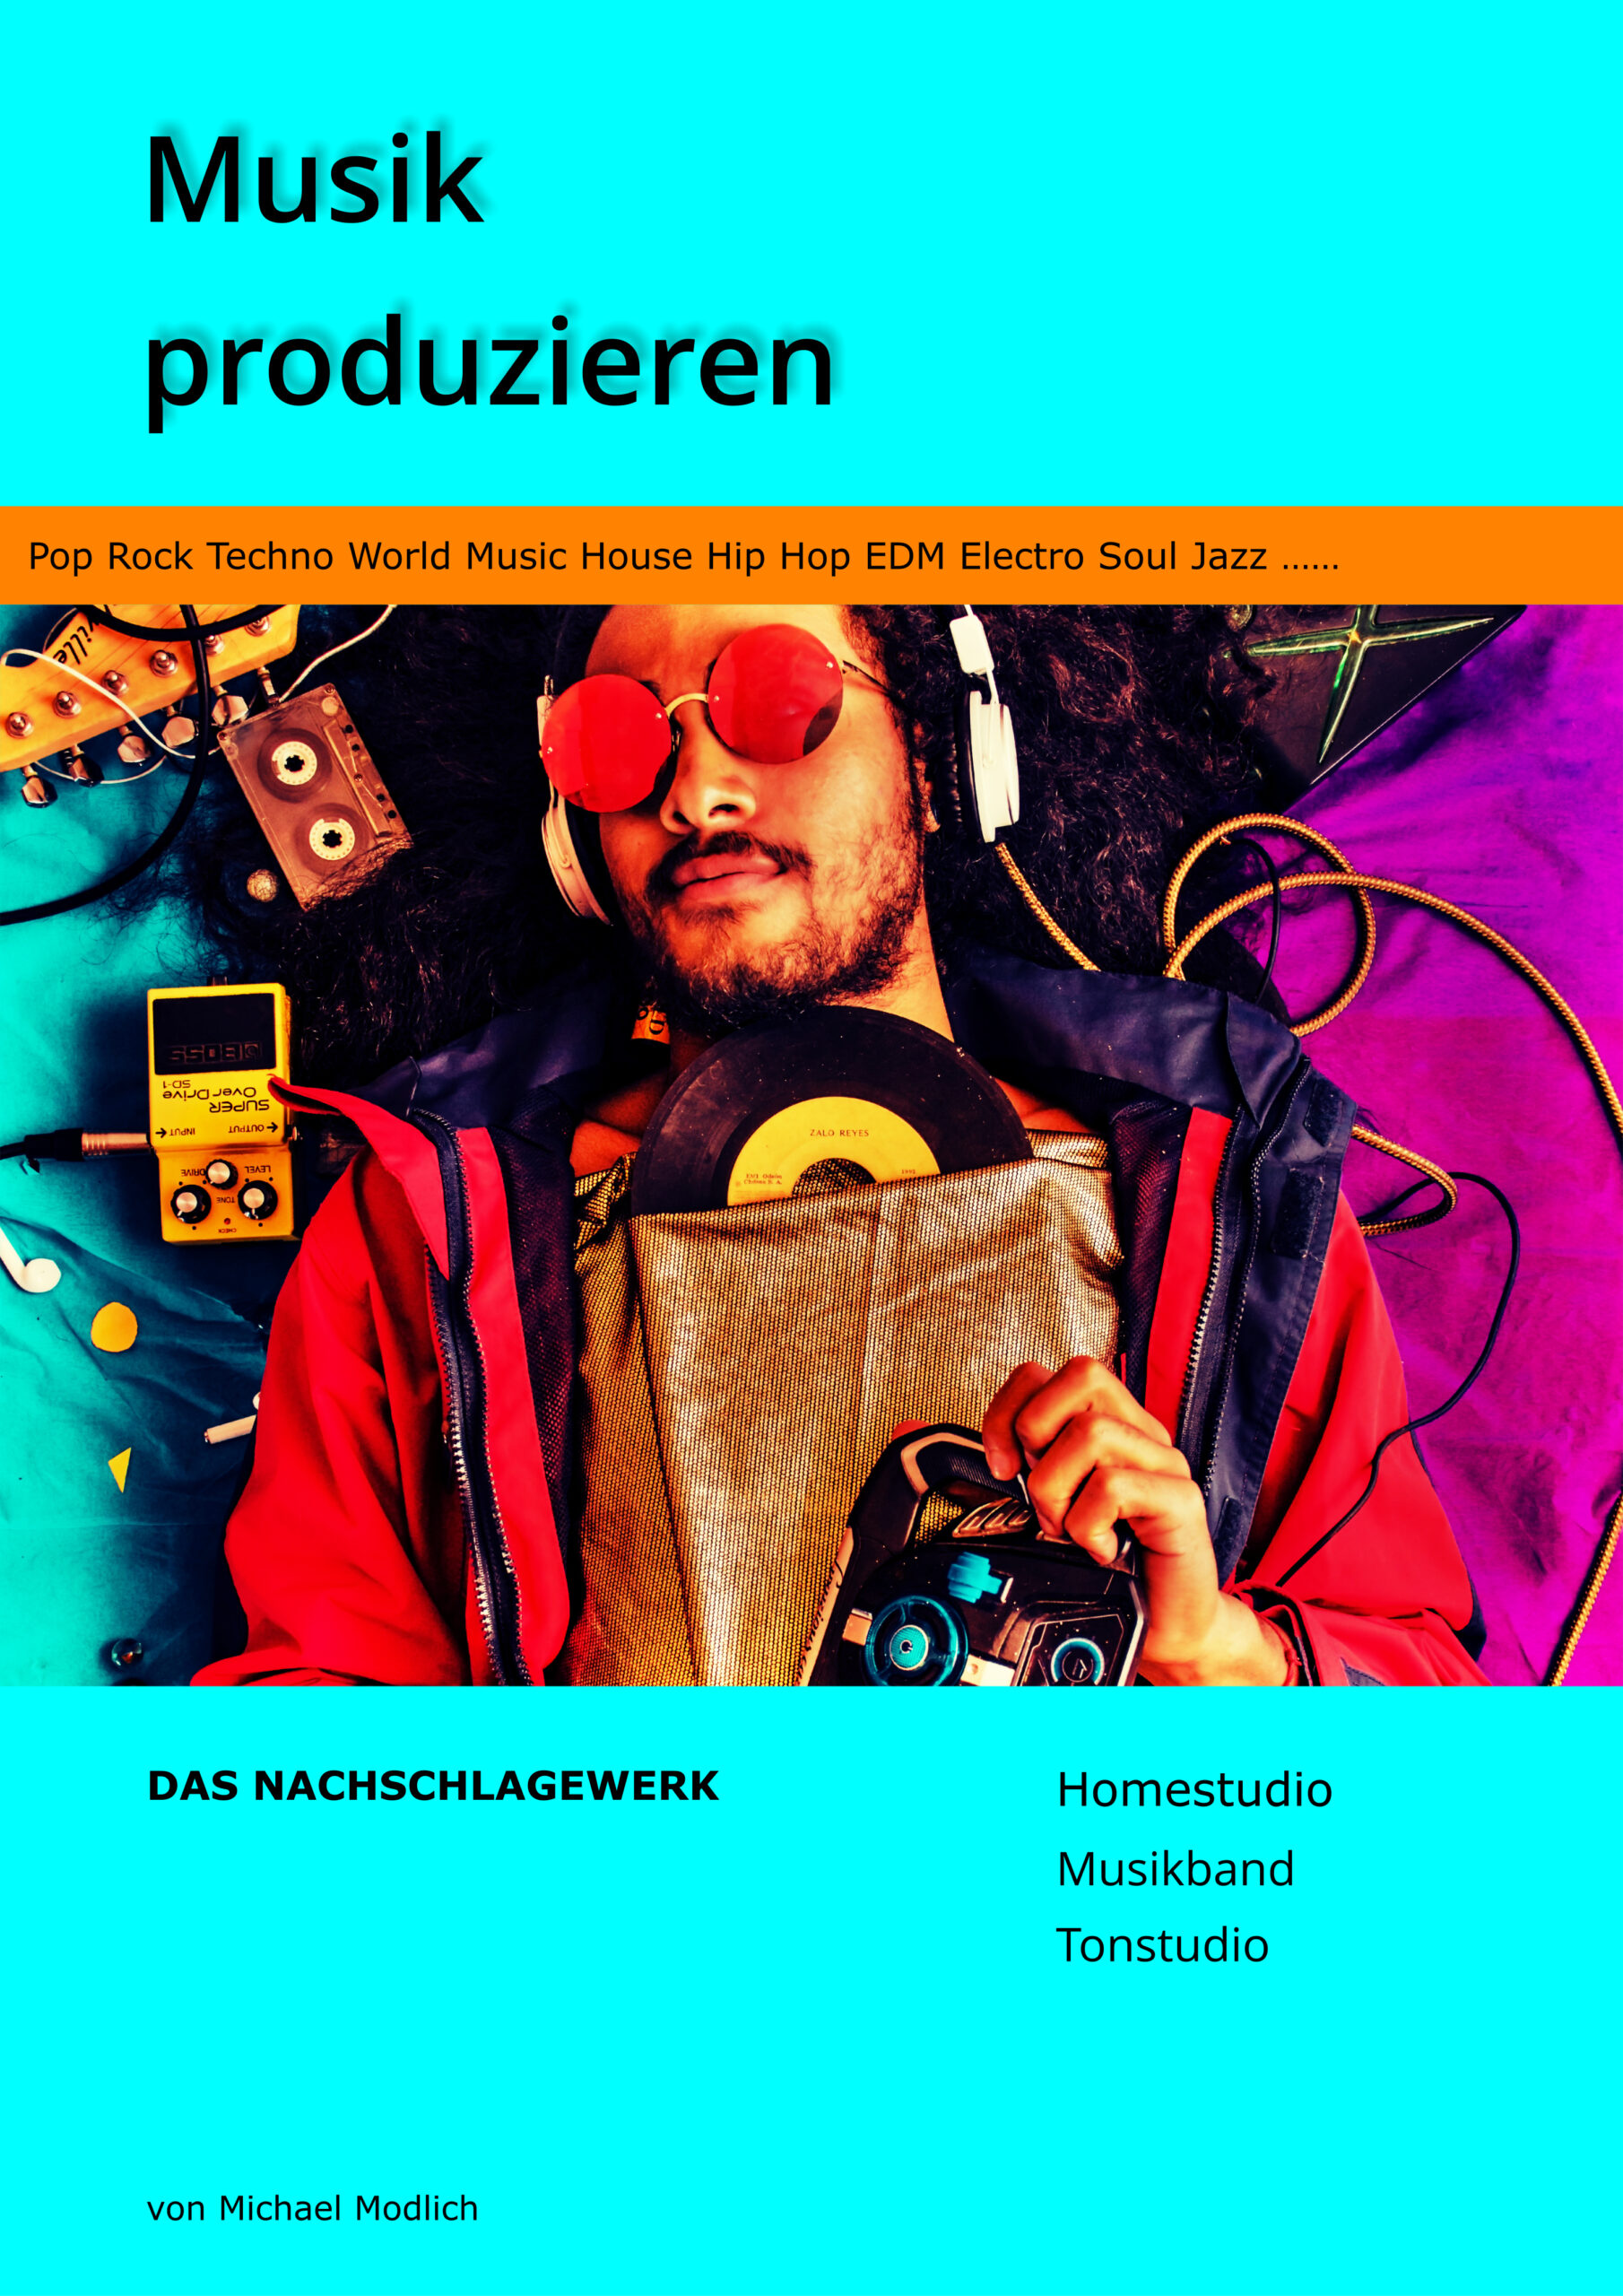 Musik-produzieren-Cover-2020-Nachschlagewerk-3-Cover-5